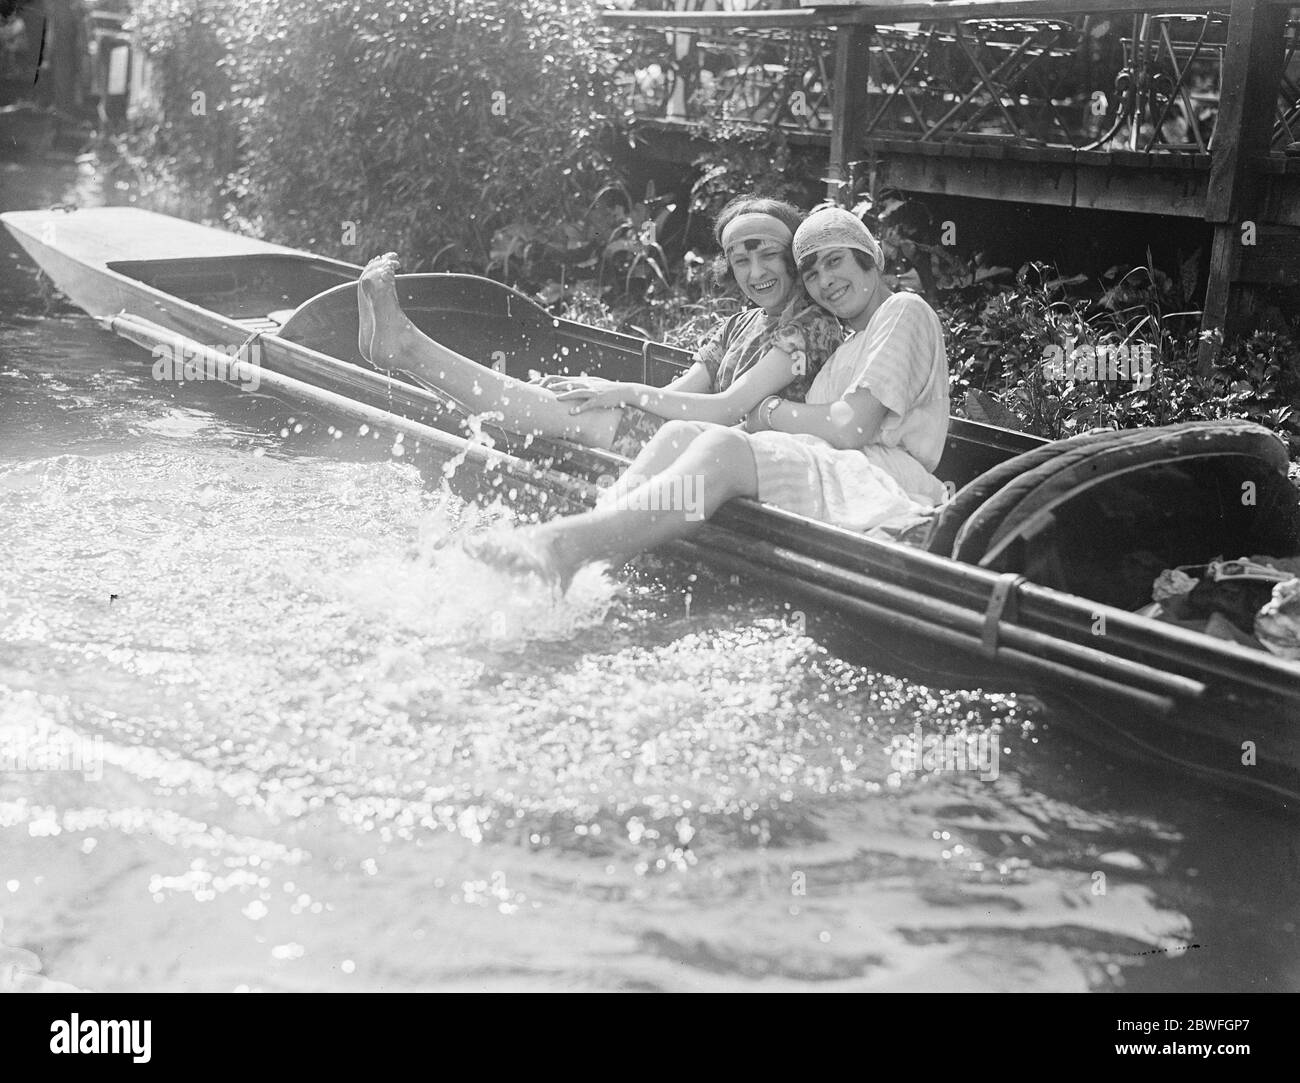 Belles en mousse ces filles ravie de rivière pensent que les eaux douces de la Tamise dans le sud de l'Angleterre semblent plus rafraîchissantes avec une tête sur eux 27 mai 1922 Banque D'Images